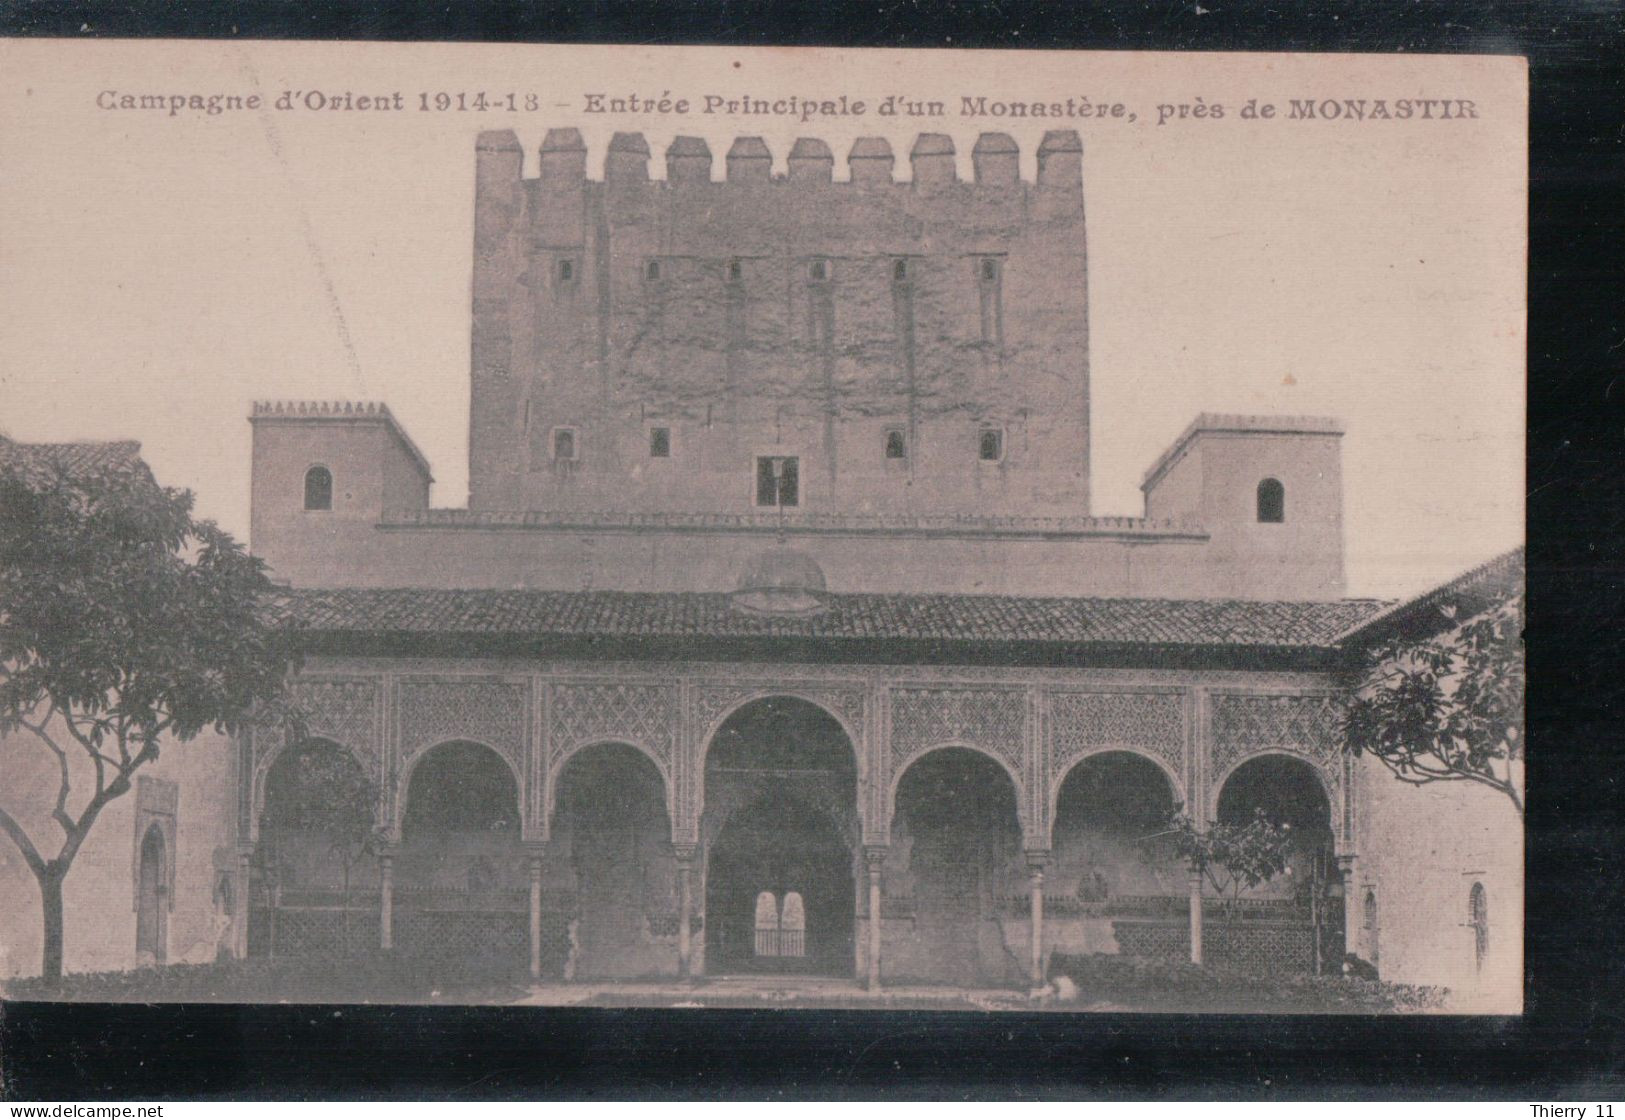 Cpa  Campagne D'Orient 1914-18 Entrée Principale D'un Monastère Près De Monastir - Tunisie